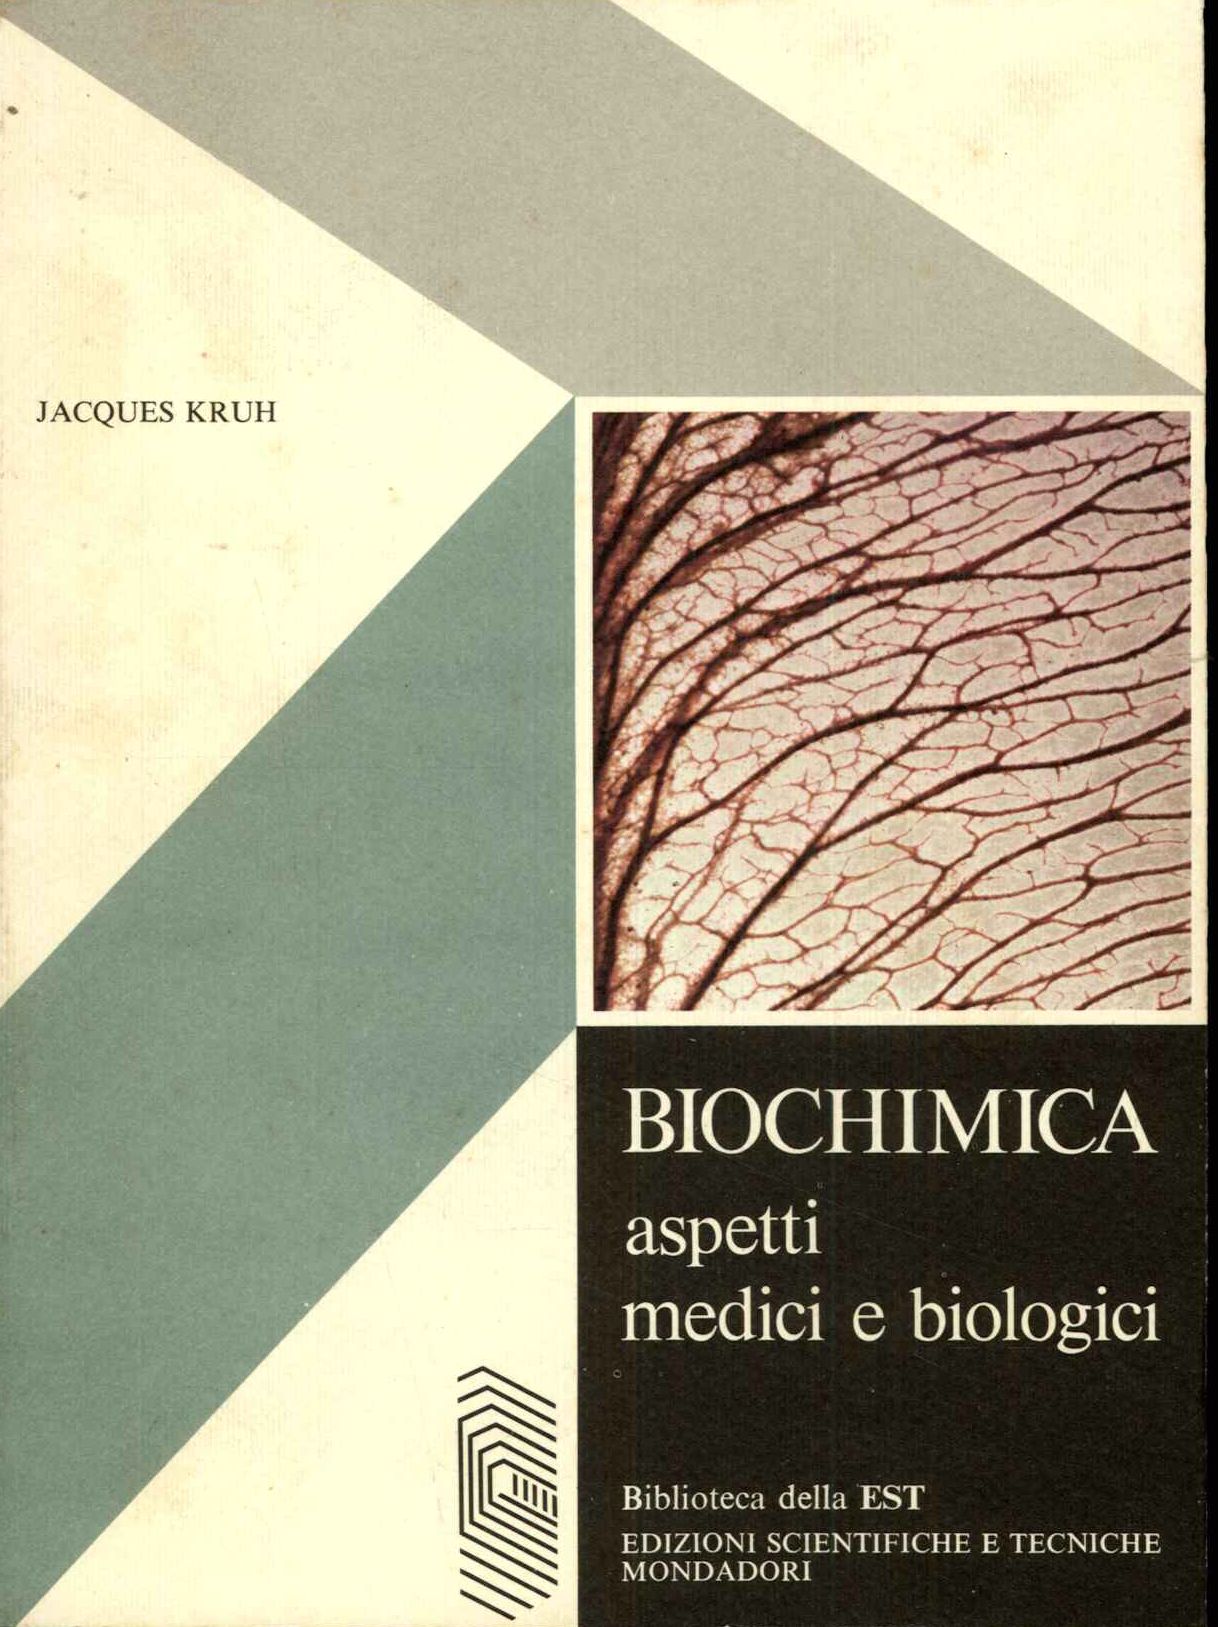 Biochimica aspetti medici e biologici